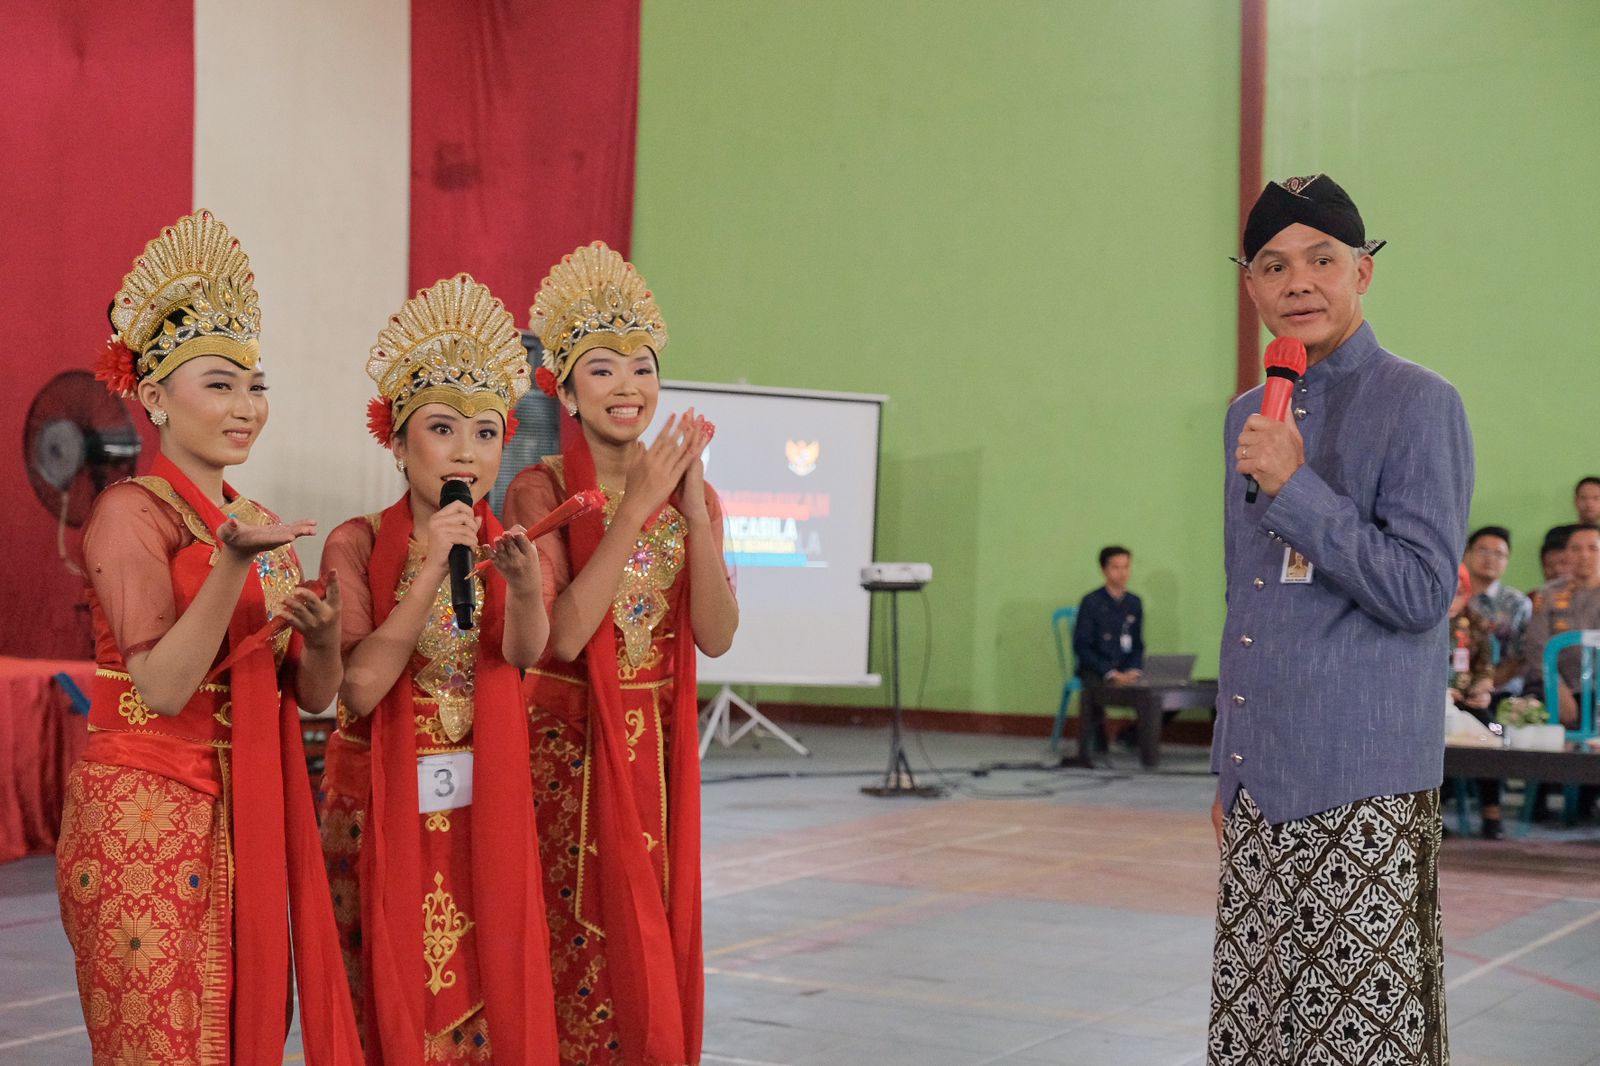 Gubernur Mengajar di SMAN 1 Kradenan, Ganjar Optimis Indonesia Emas 2045 Terwujud 